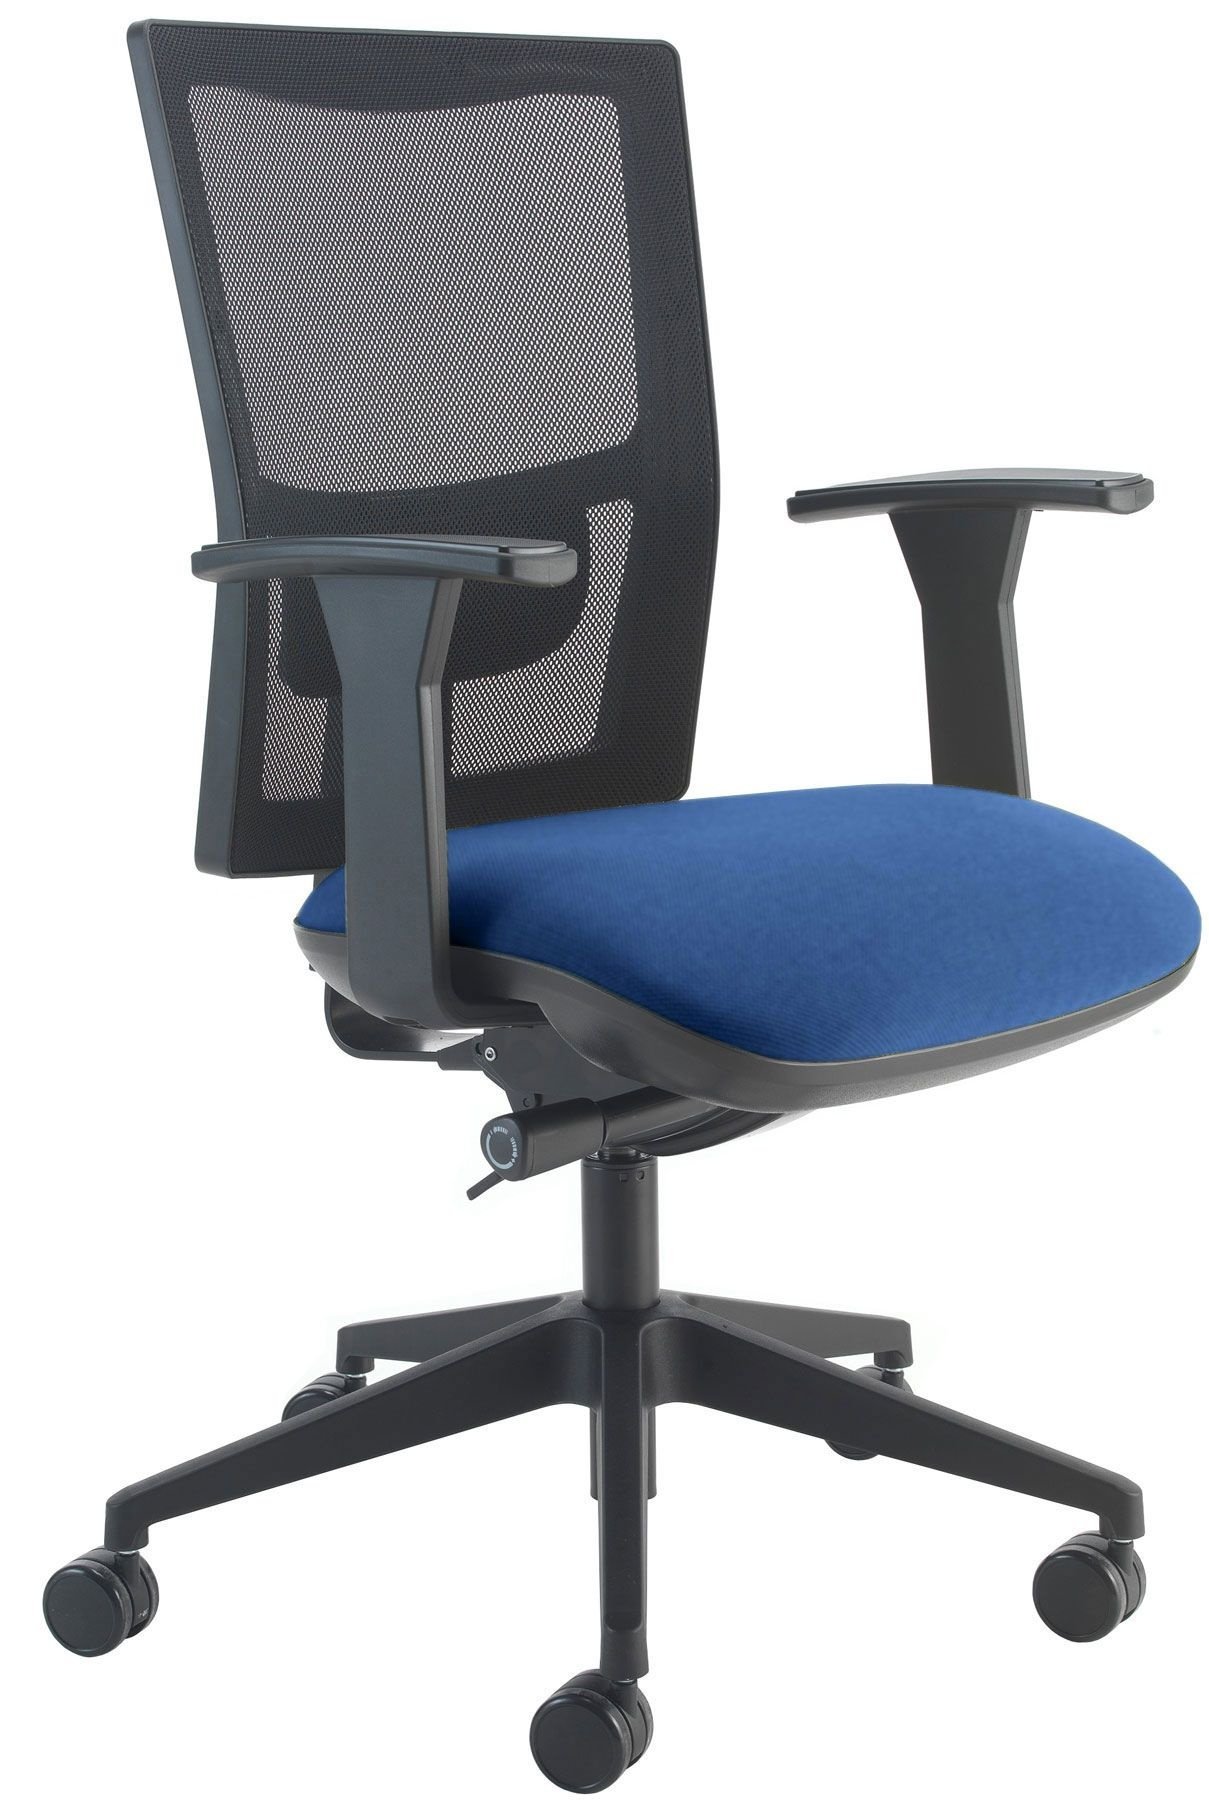 Bargain £89 Each Gresham Santis Ergonomic Office Swivel Chairs 2 In Stock 